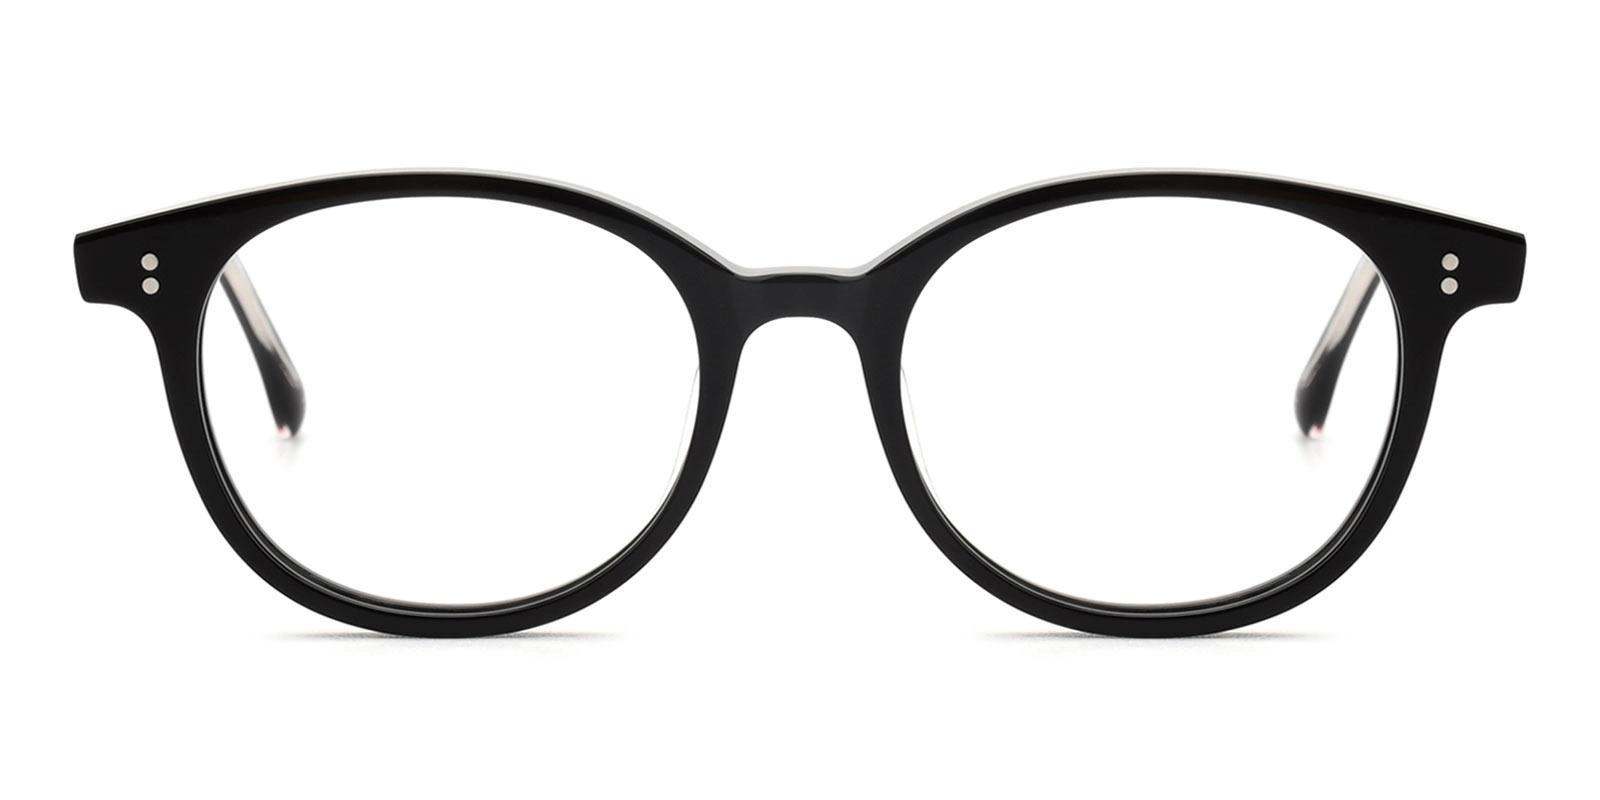 Colkin Black Acetate Eyeglasses , UniversalBridgeFit Frames from ABBE Glasses